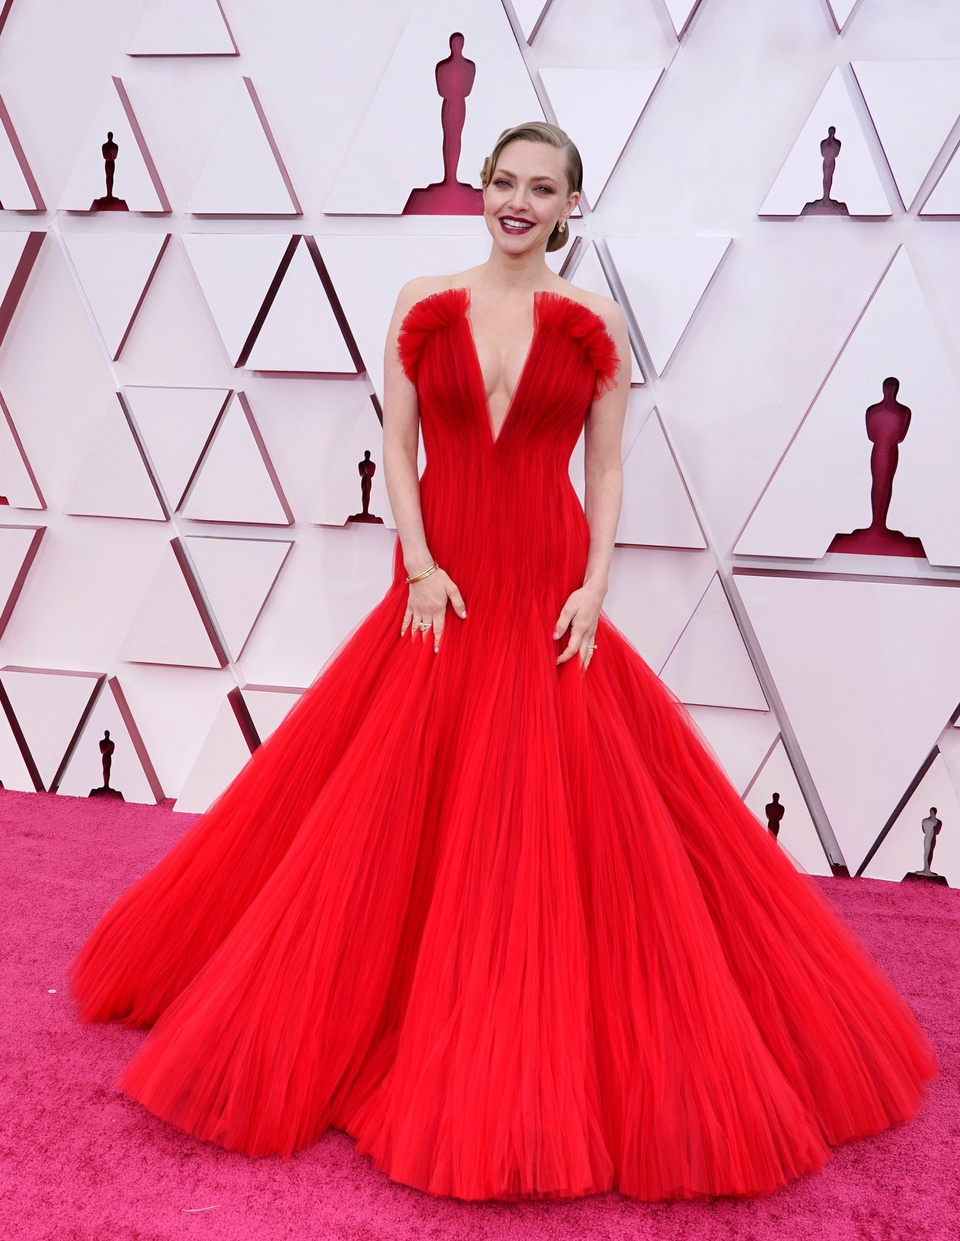 Không hổ danh là mỹ nhân hạng A Hollywood, Amanda Seyfried được bình chọn là một trong những ngôi sao mặc đẹp nhất Oscar năm nay. Cô diện váy đỏ xếp nếp tinh tế của nhà mốt Armani Privé. Năm nay, Seyfried tranh giải Nữ diễn viên phụ xuất sắc nhưng thất bại trước 'lão tướng' Hàn Quốc Youn Yuh Jung.